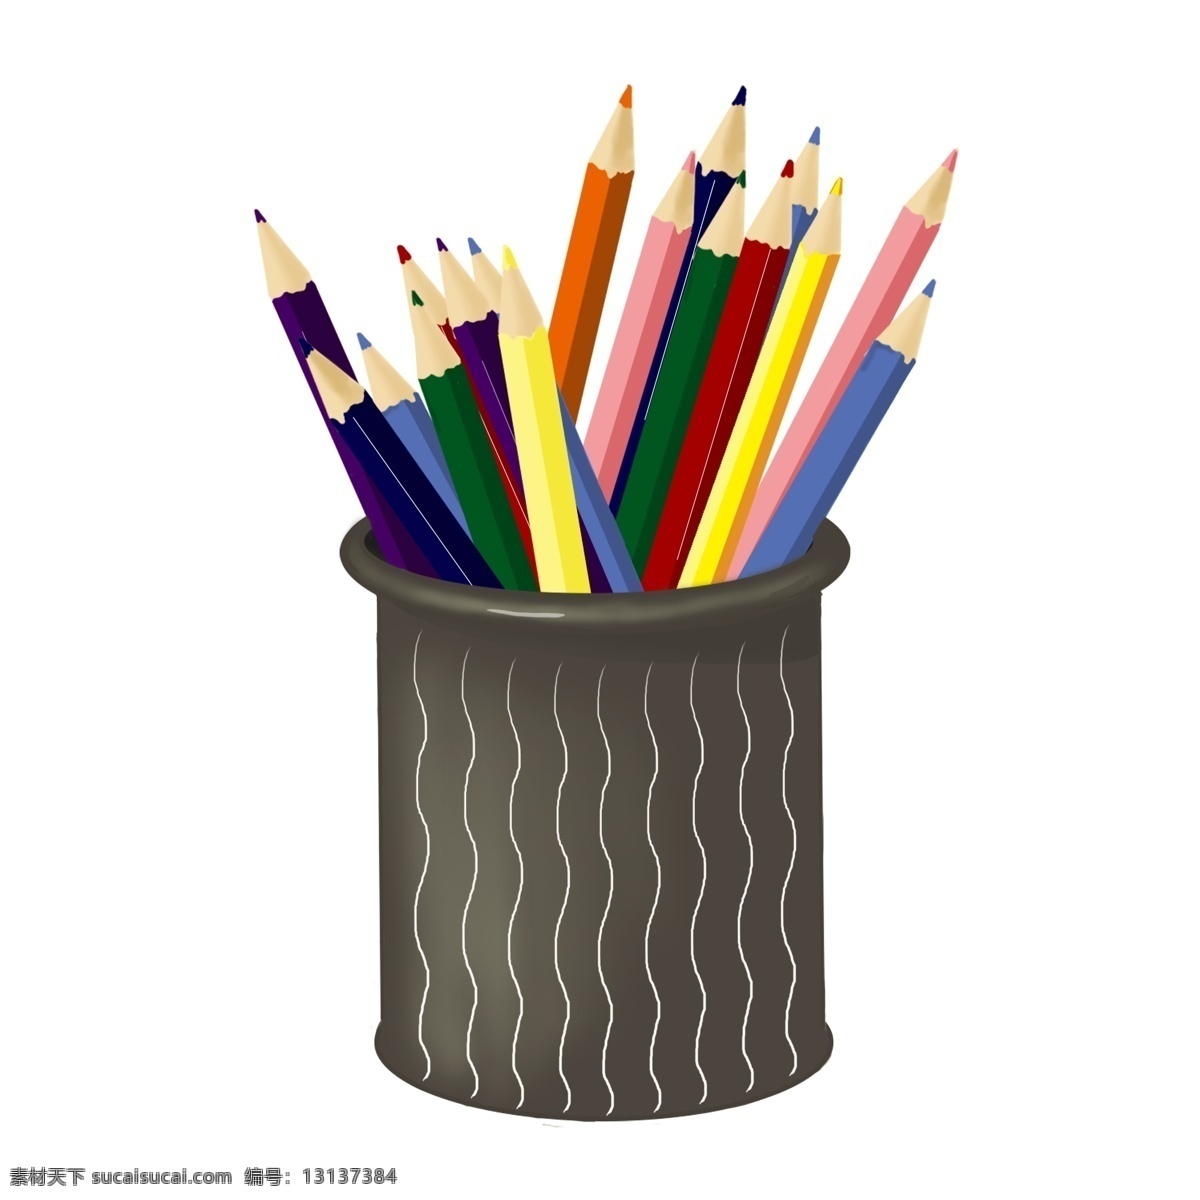 笔筒 里 彩色 画笔 手绘 元素 文具 铅笔 彩色铅笔 写实